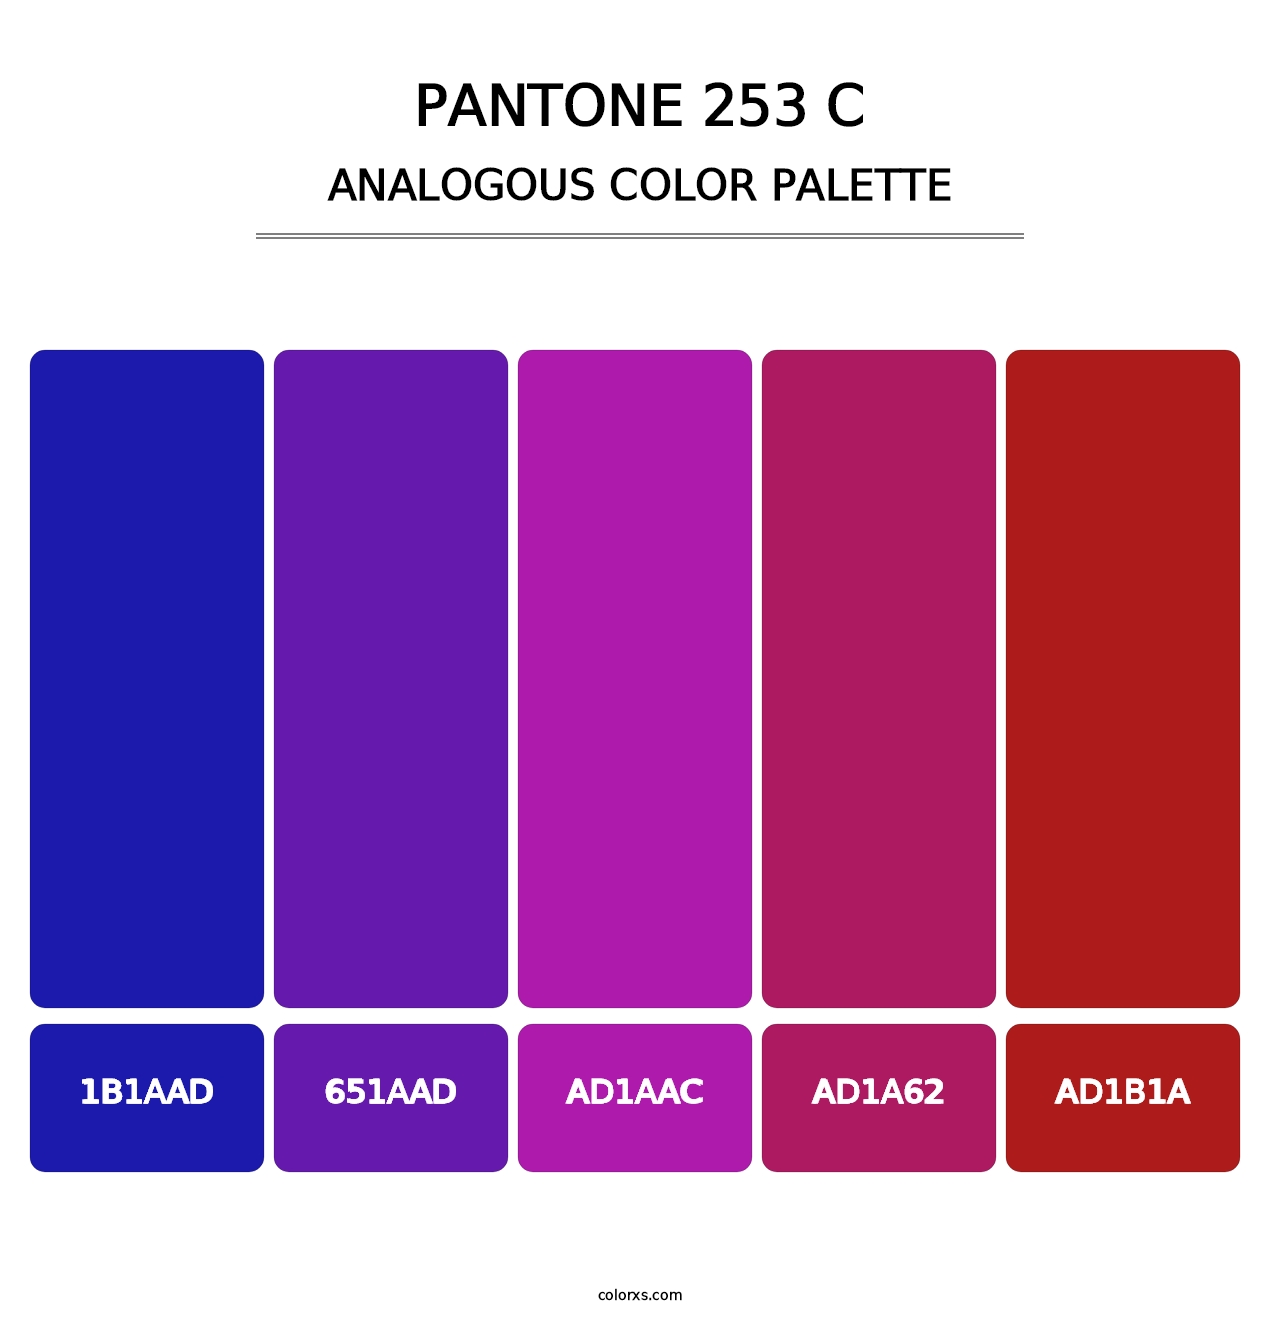 PANTONE 253 C - Analogous Color Palette